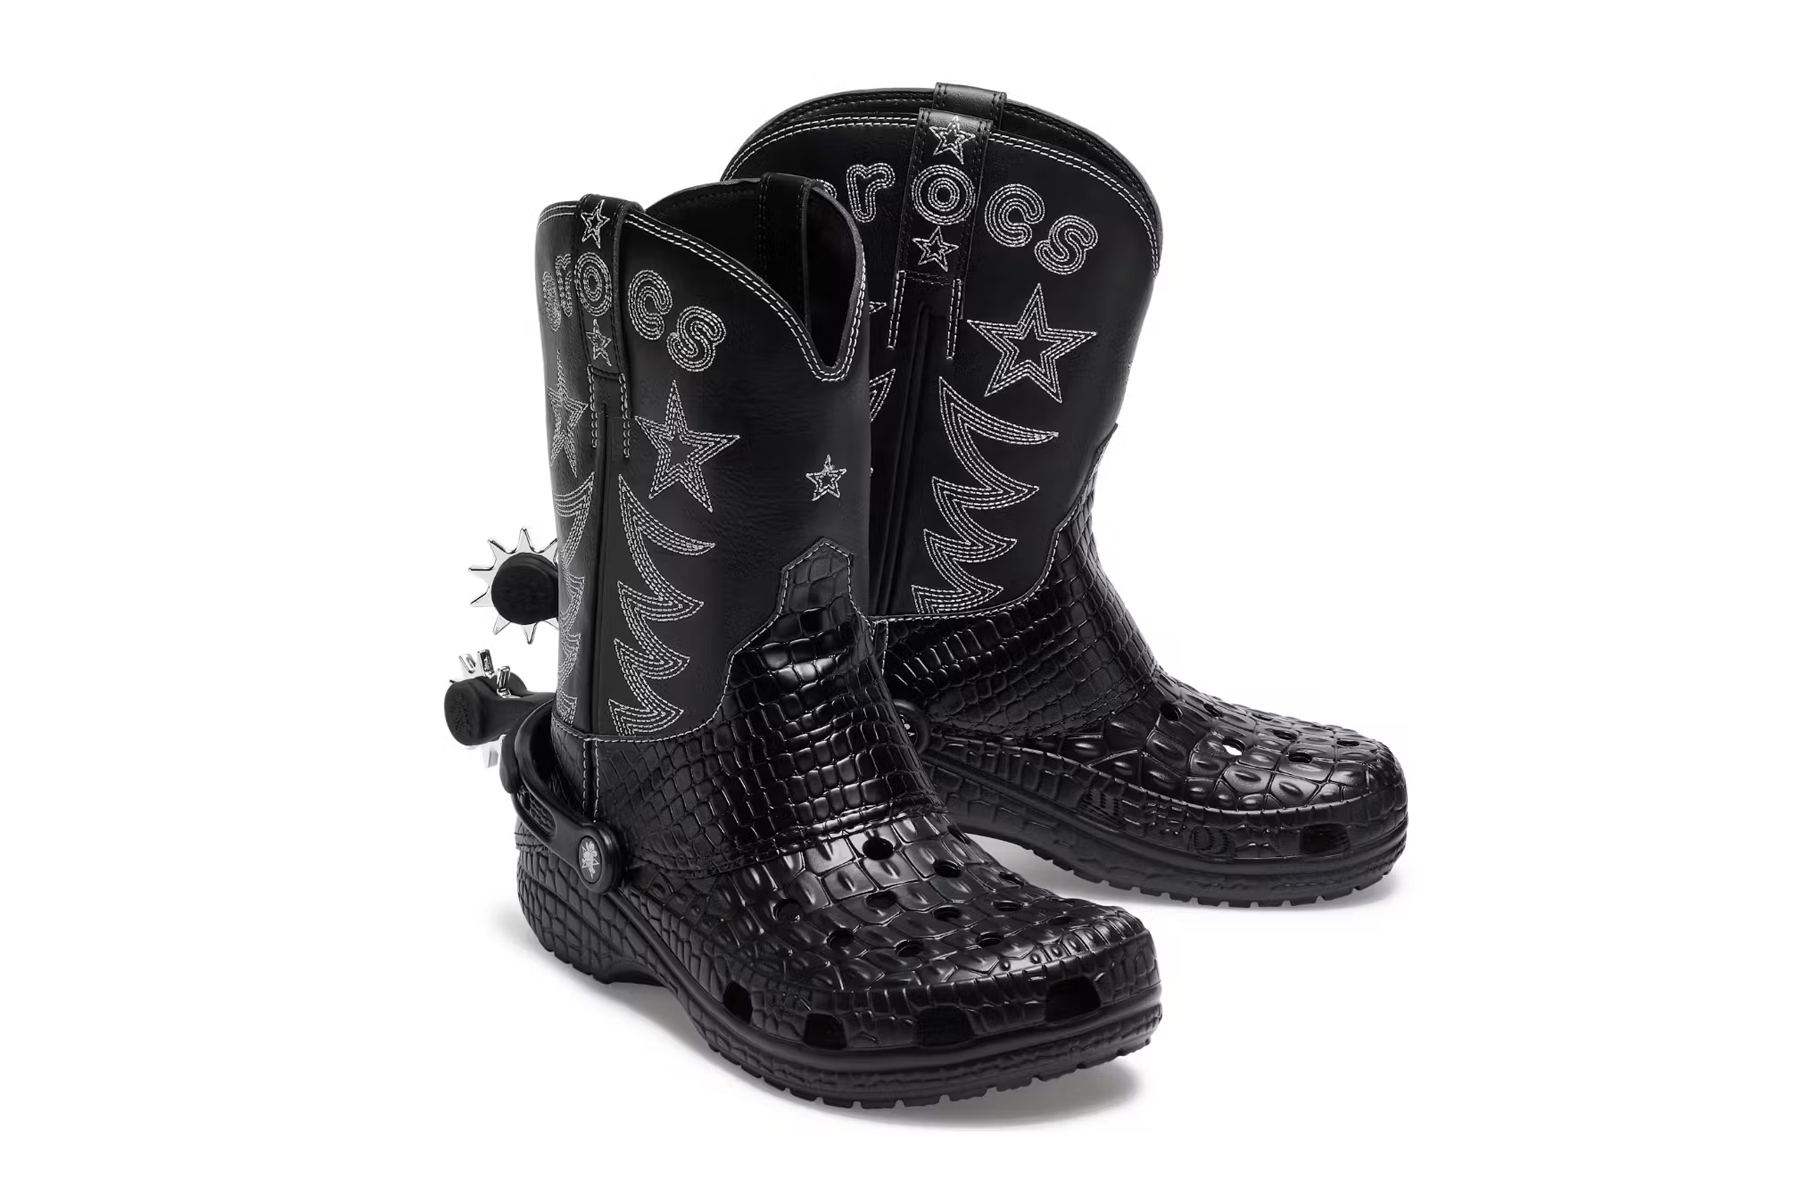 Crocs Cowboy boots